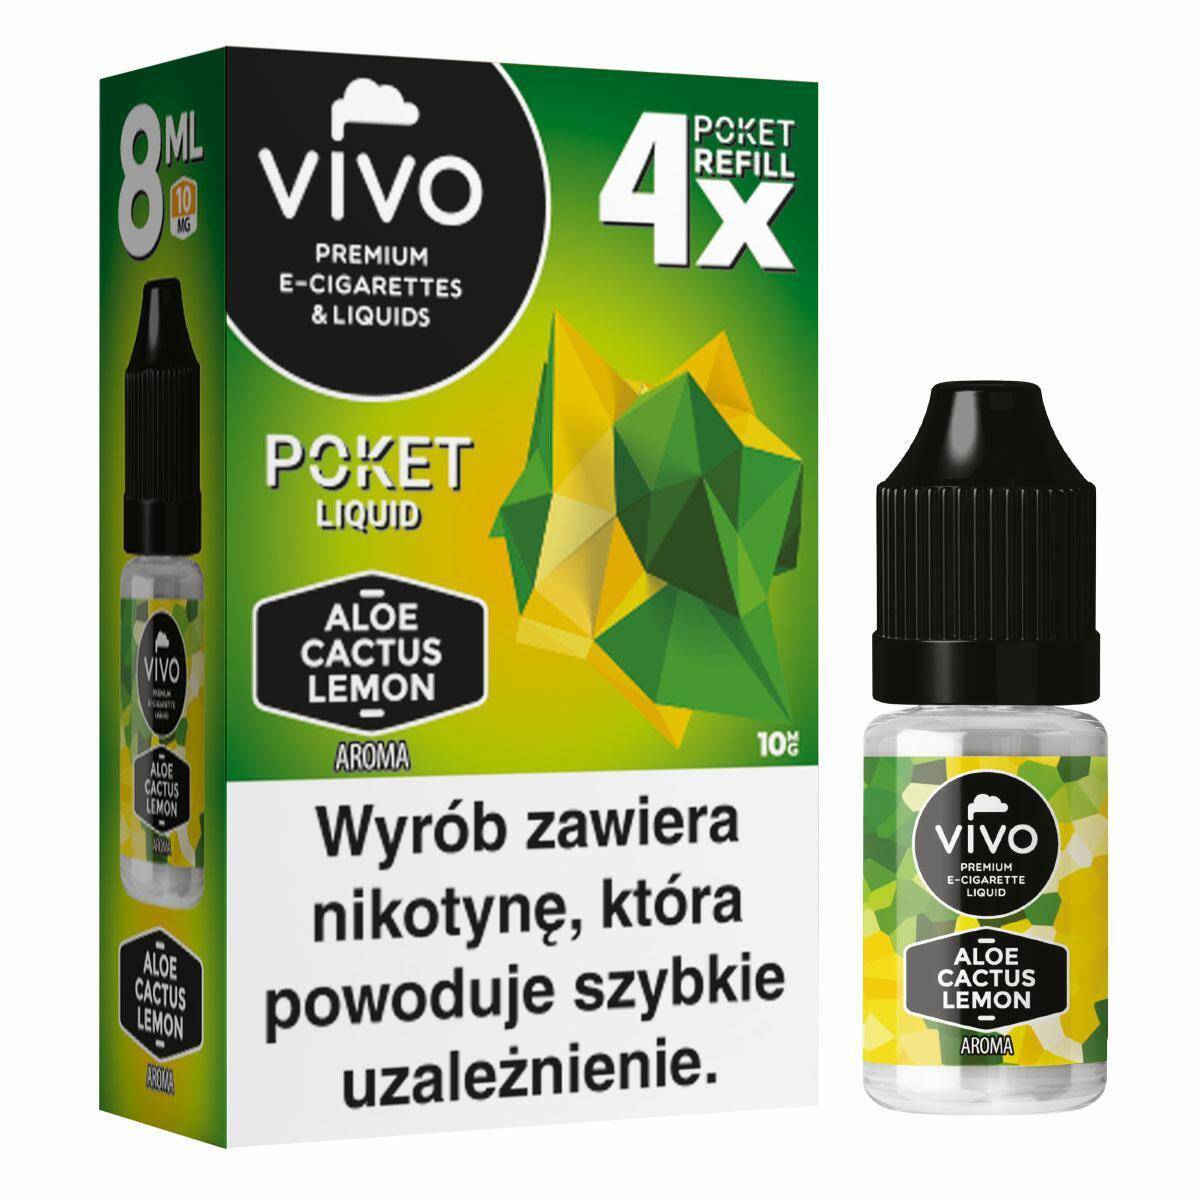 E-liquids VIVO POKET- Aloe Cactus Lemon x4/10mg/8ml